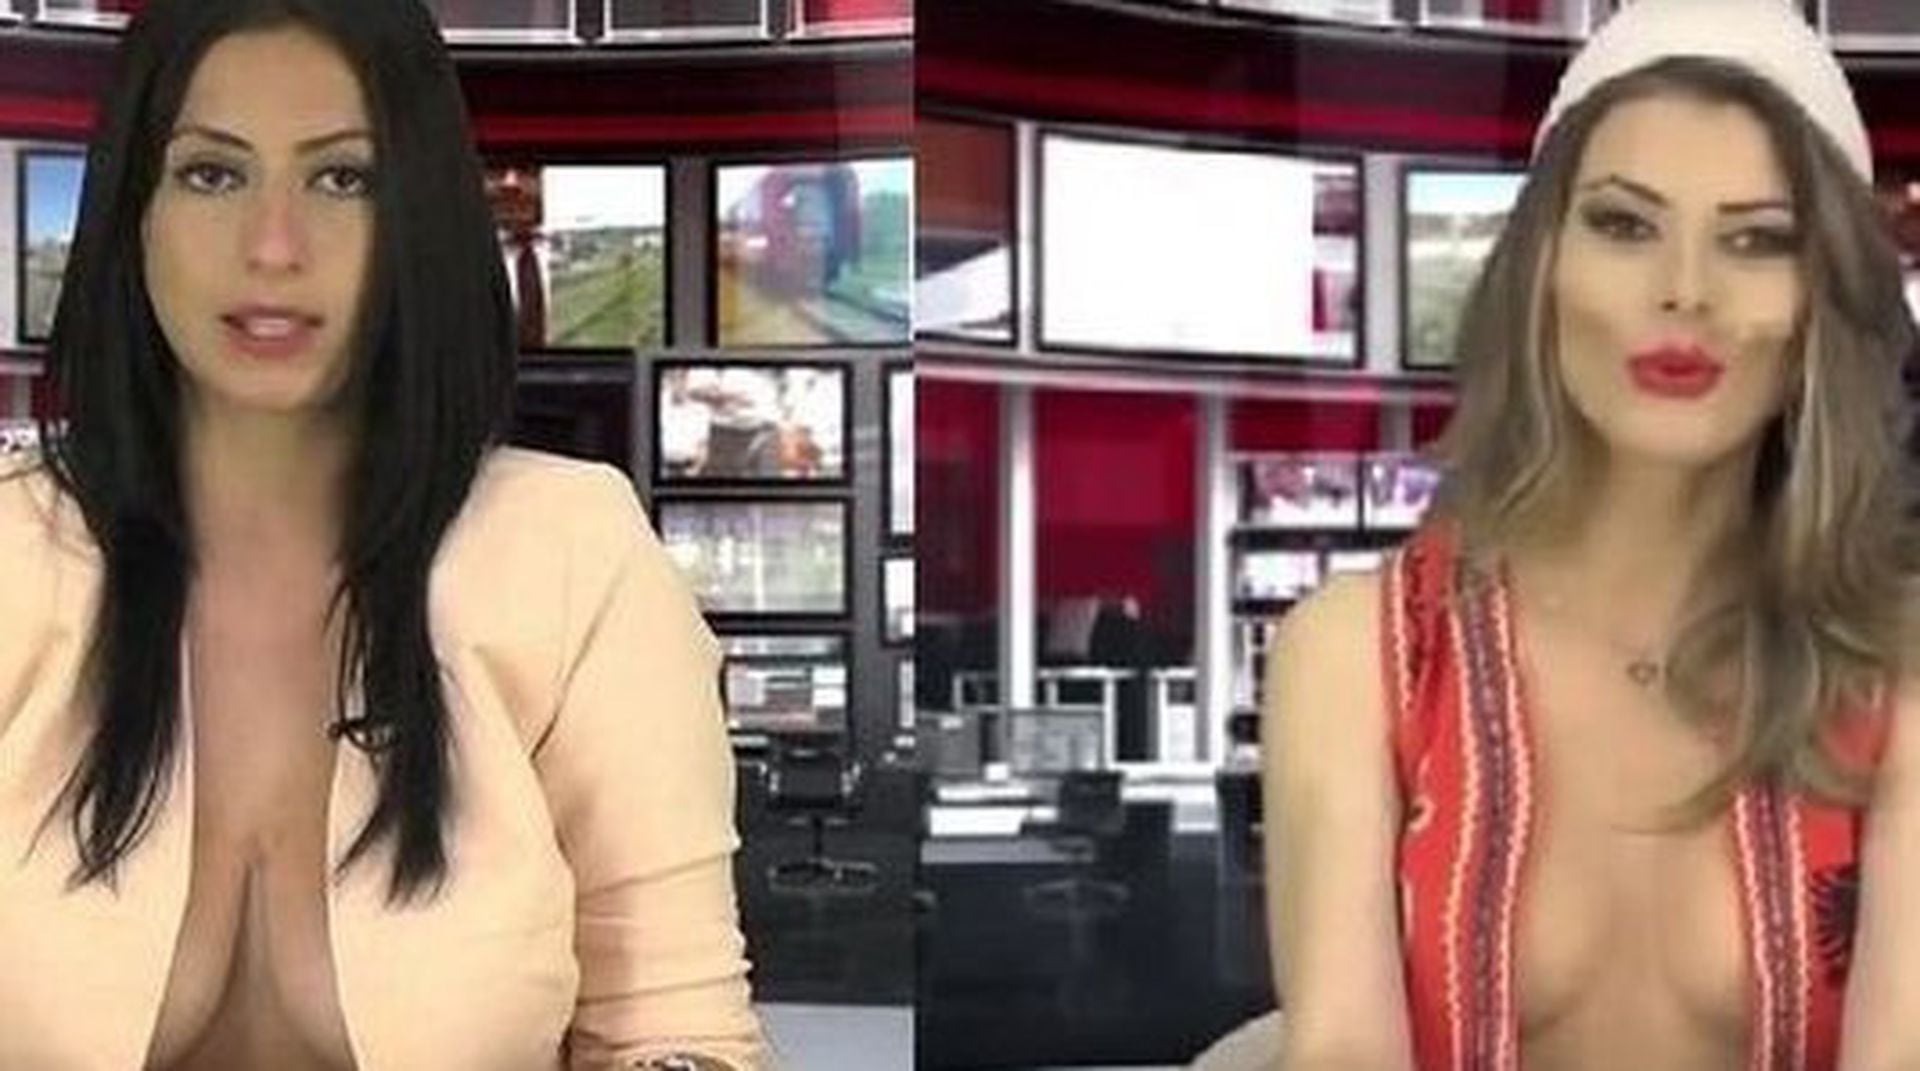 El noticiero en Albania en el que sus presentadores usan profundos escotes  para atraer audiencia